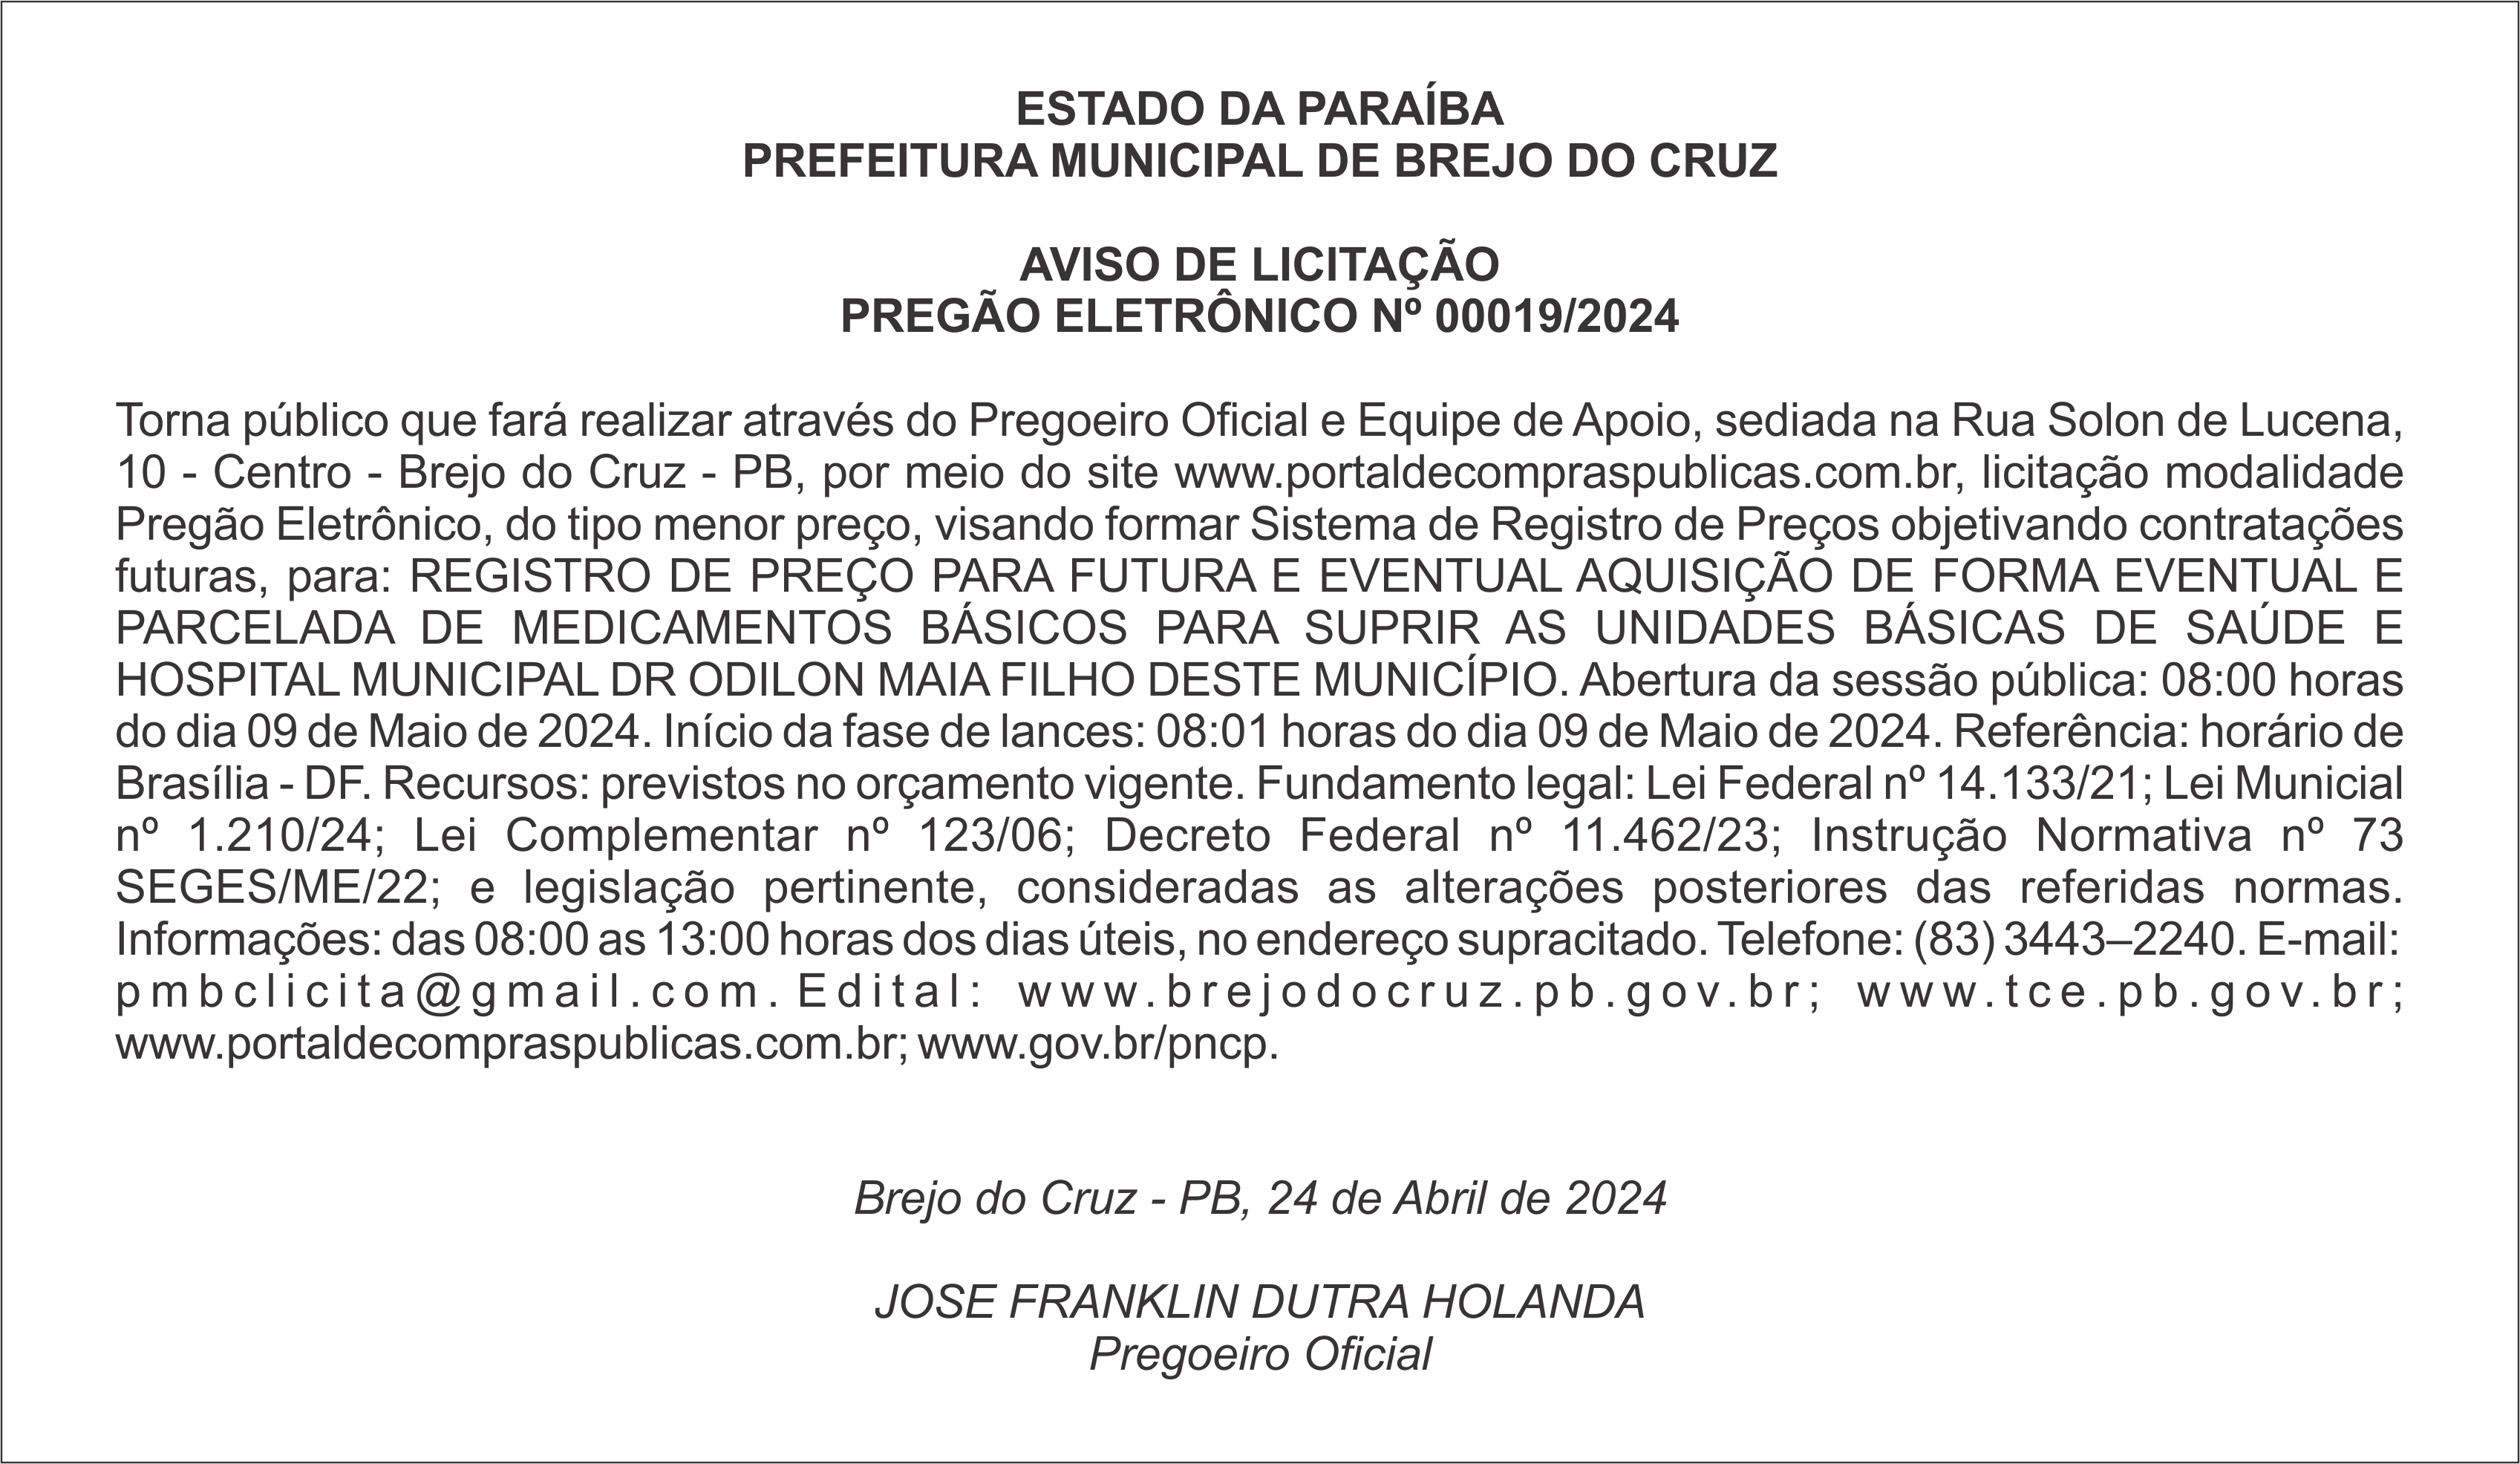 PREFEITURA MUNICIPAL DE BREJO DO CRUZ – AVISO DE LICITAÇÃO – PREGÃO ELETRÔNICO Nº 00019/2024